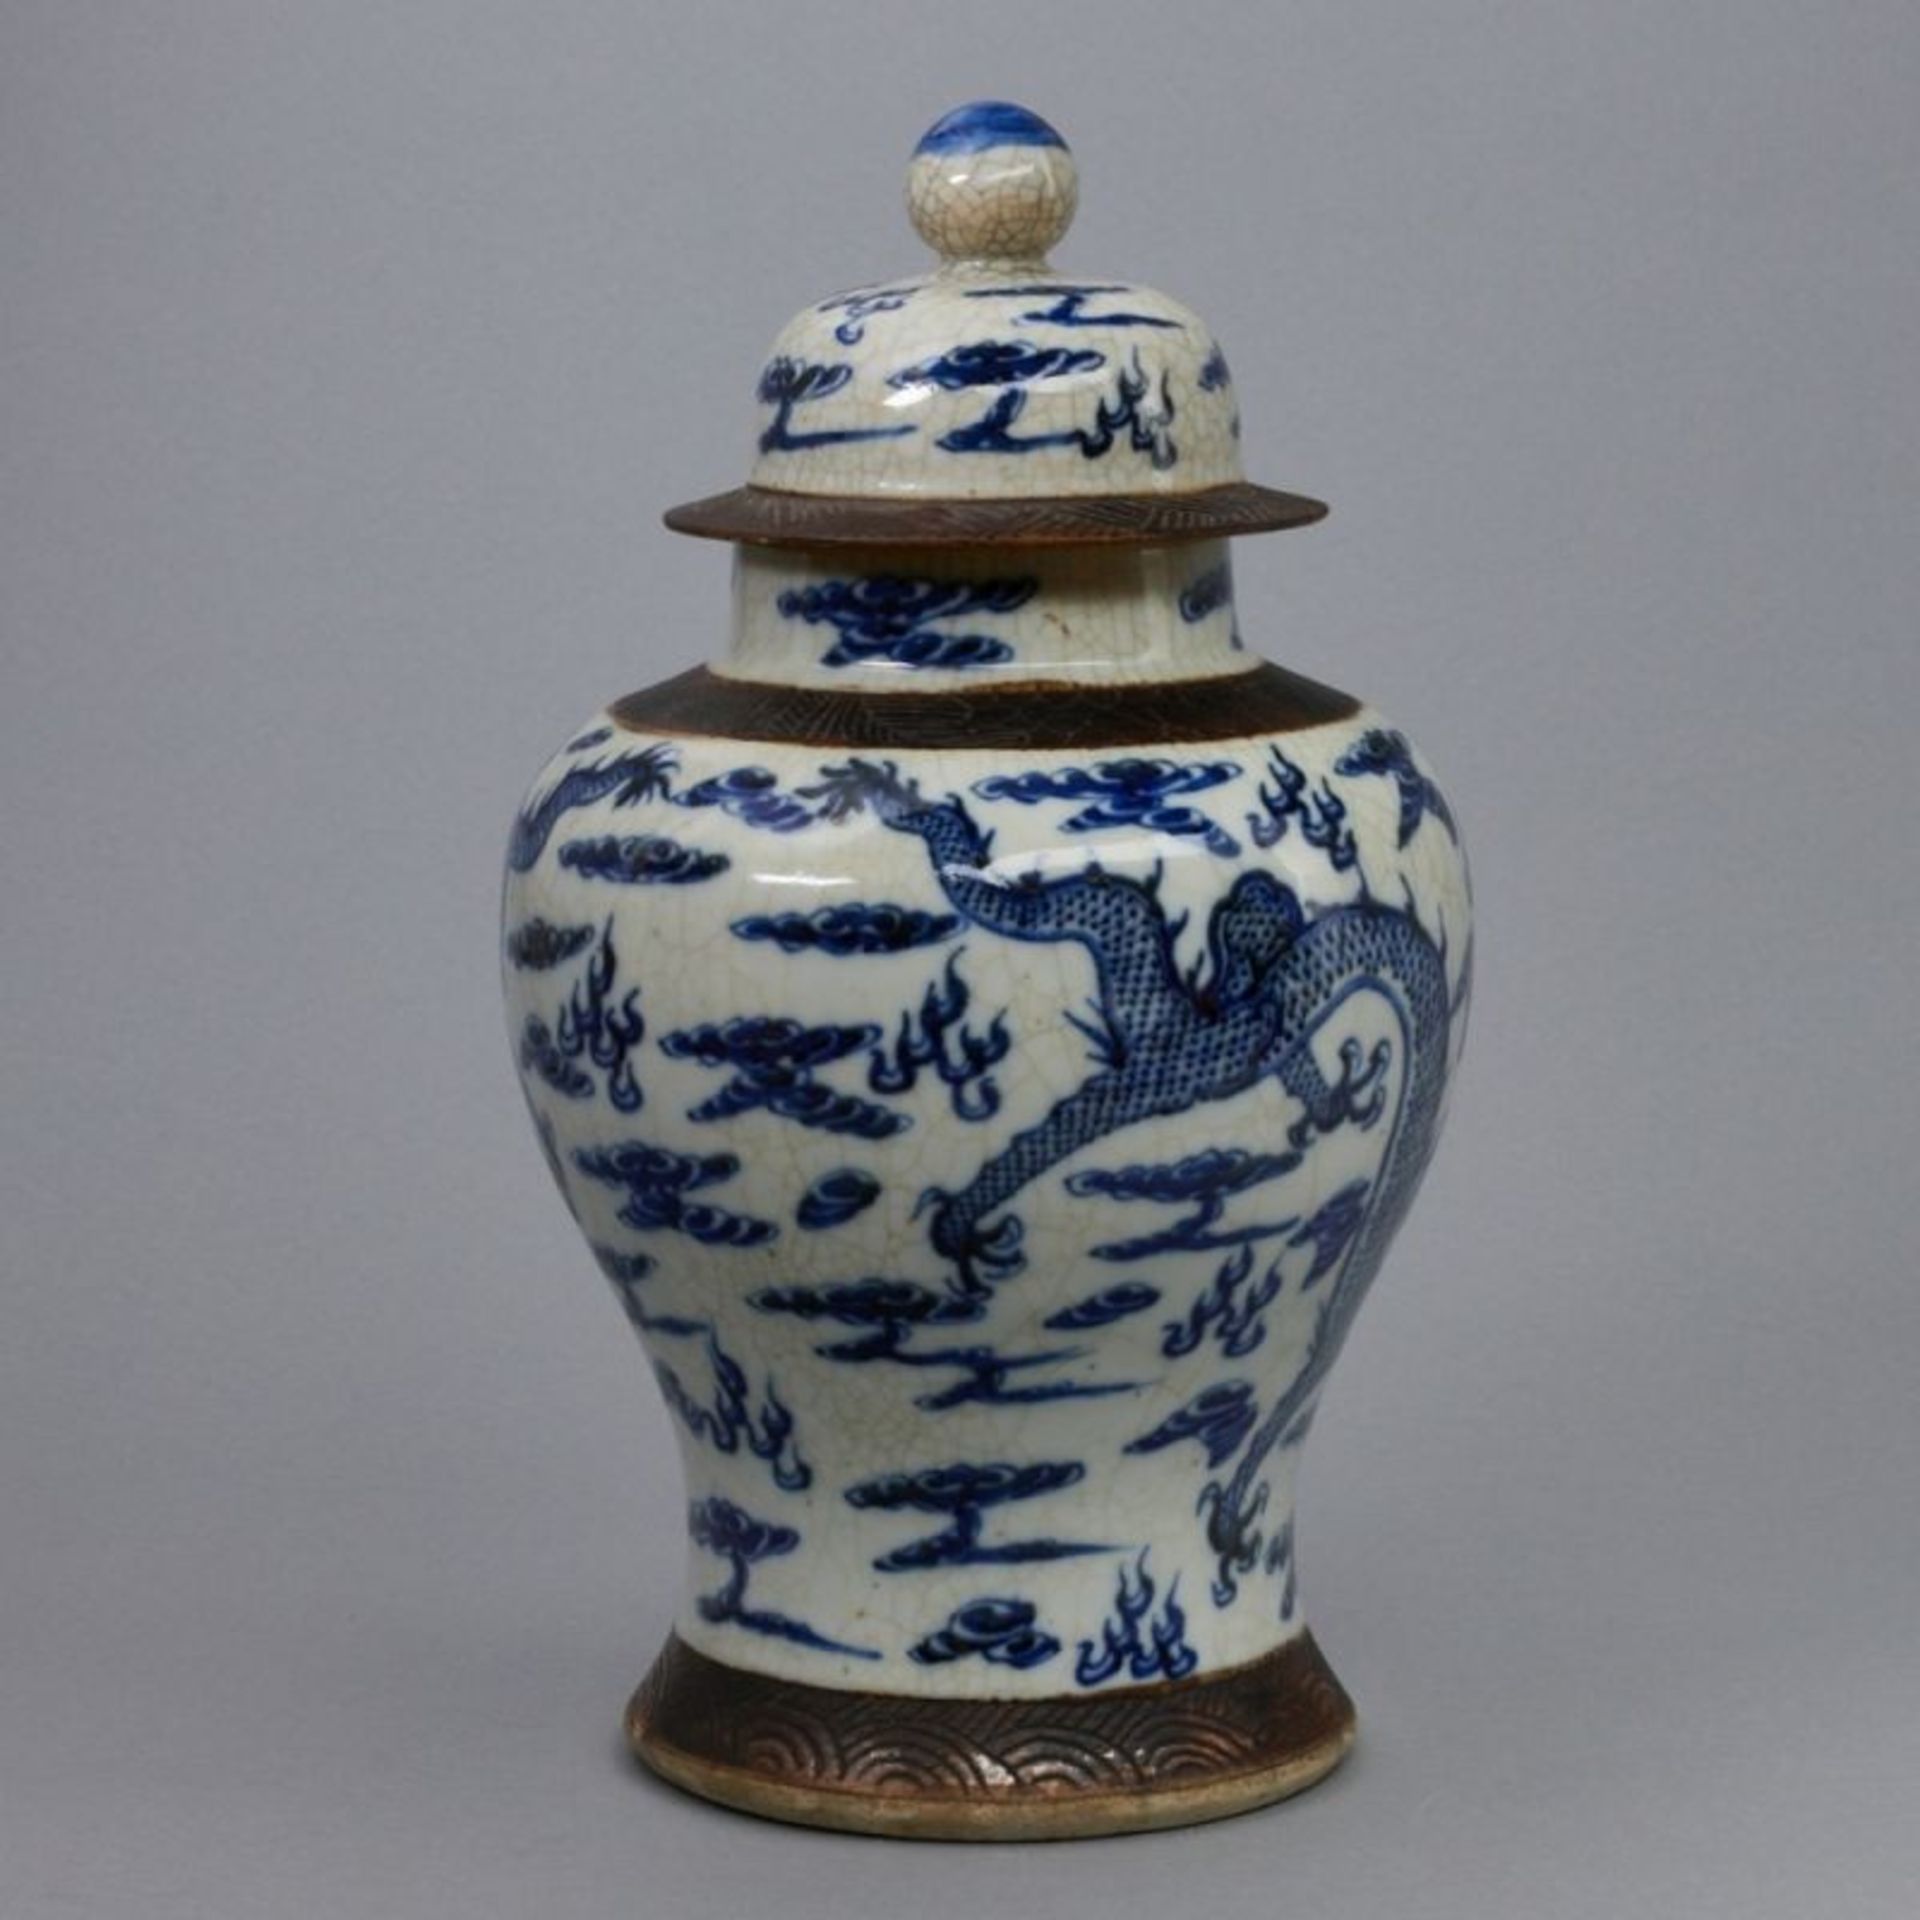 Deckelvase, China, Qing Dynastie, um 1800 - Bild 2 aus 4